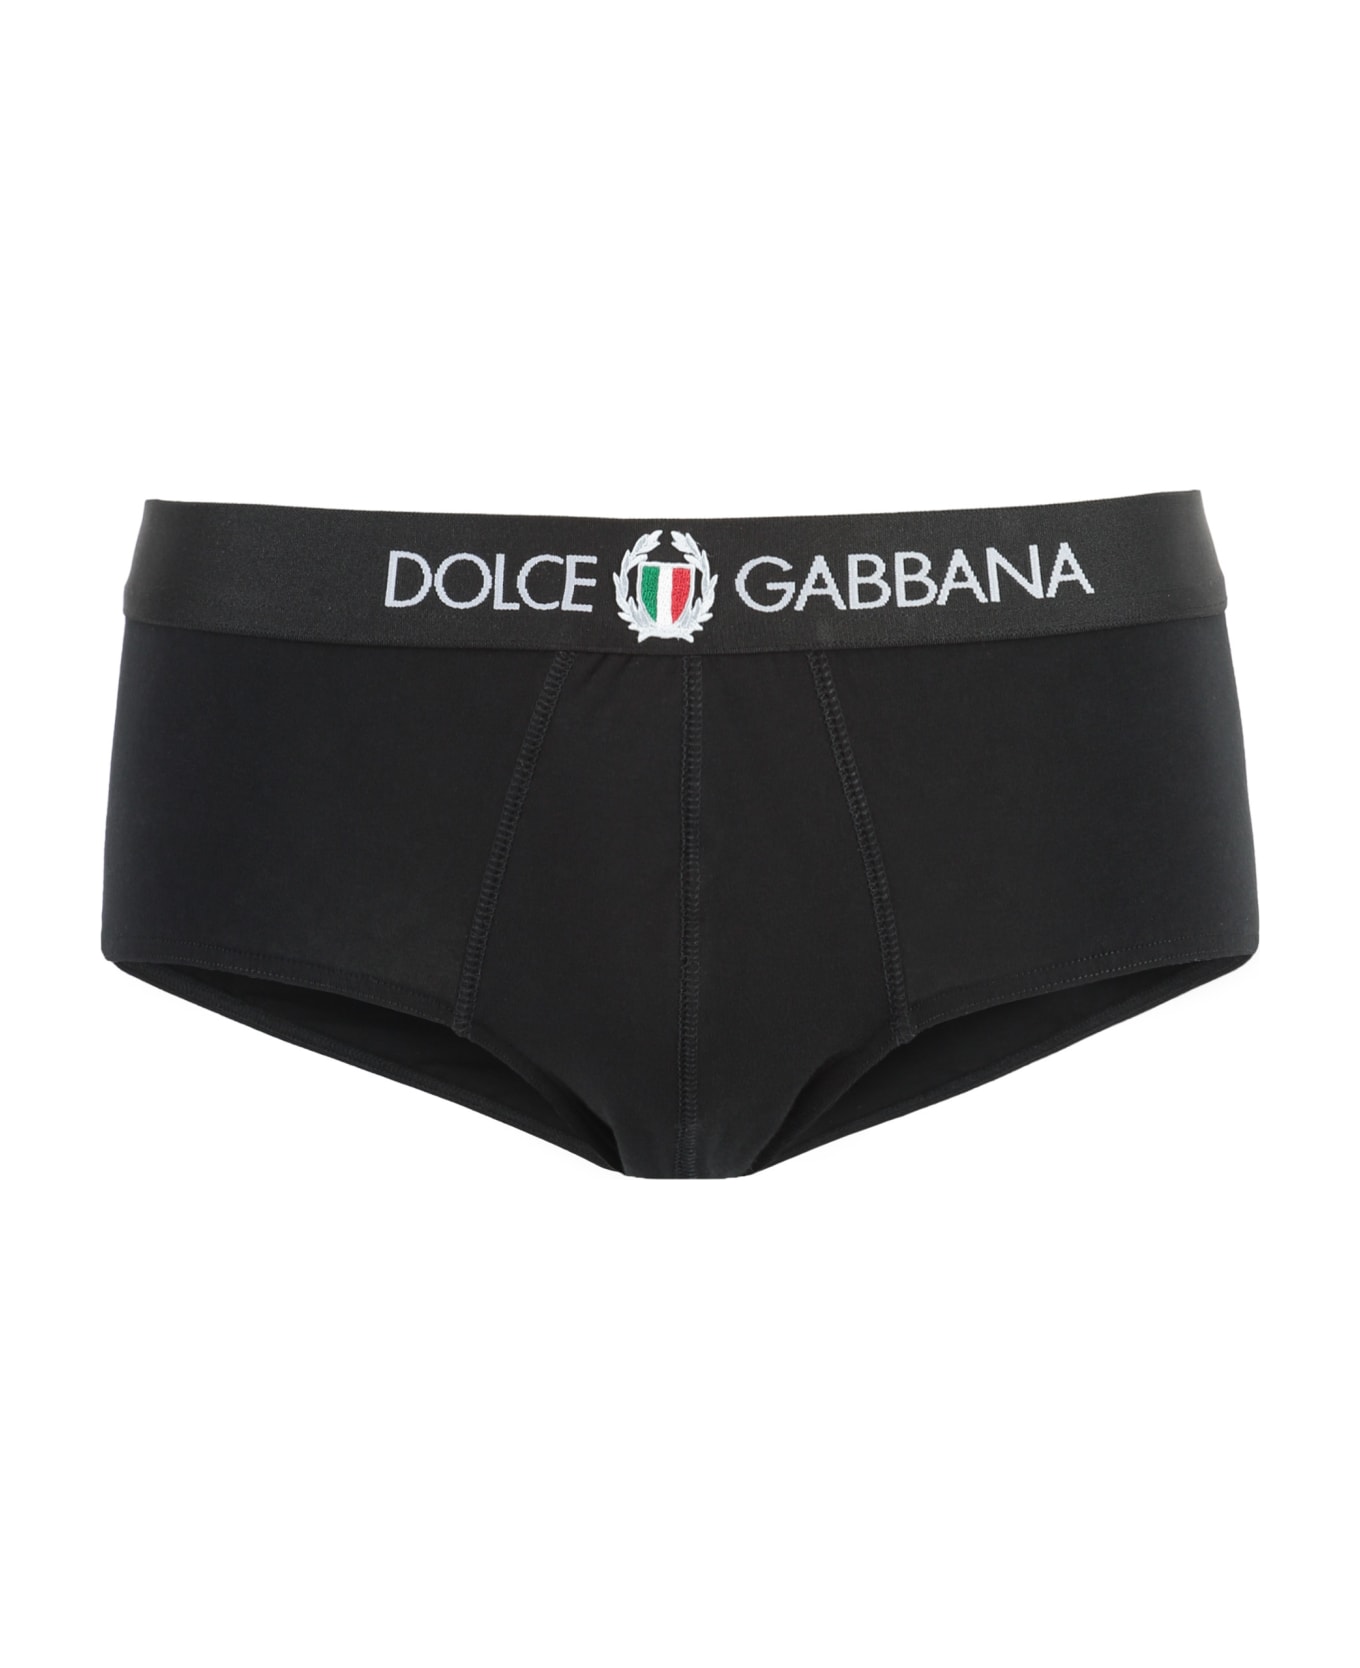 Dolce & Gabbana Brando Cotton Briefs - black ショーツ